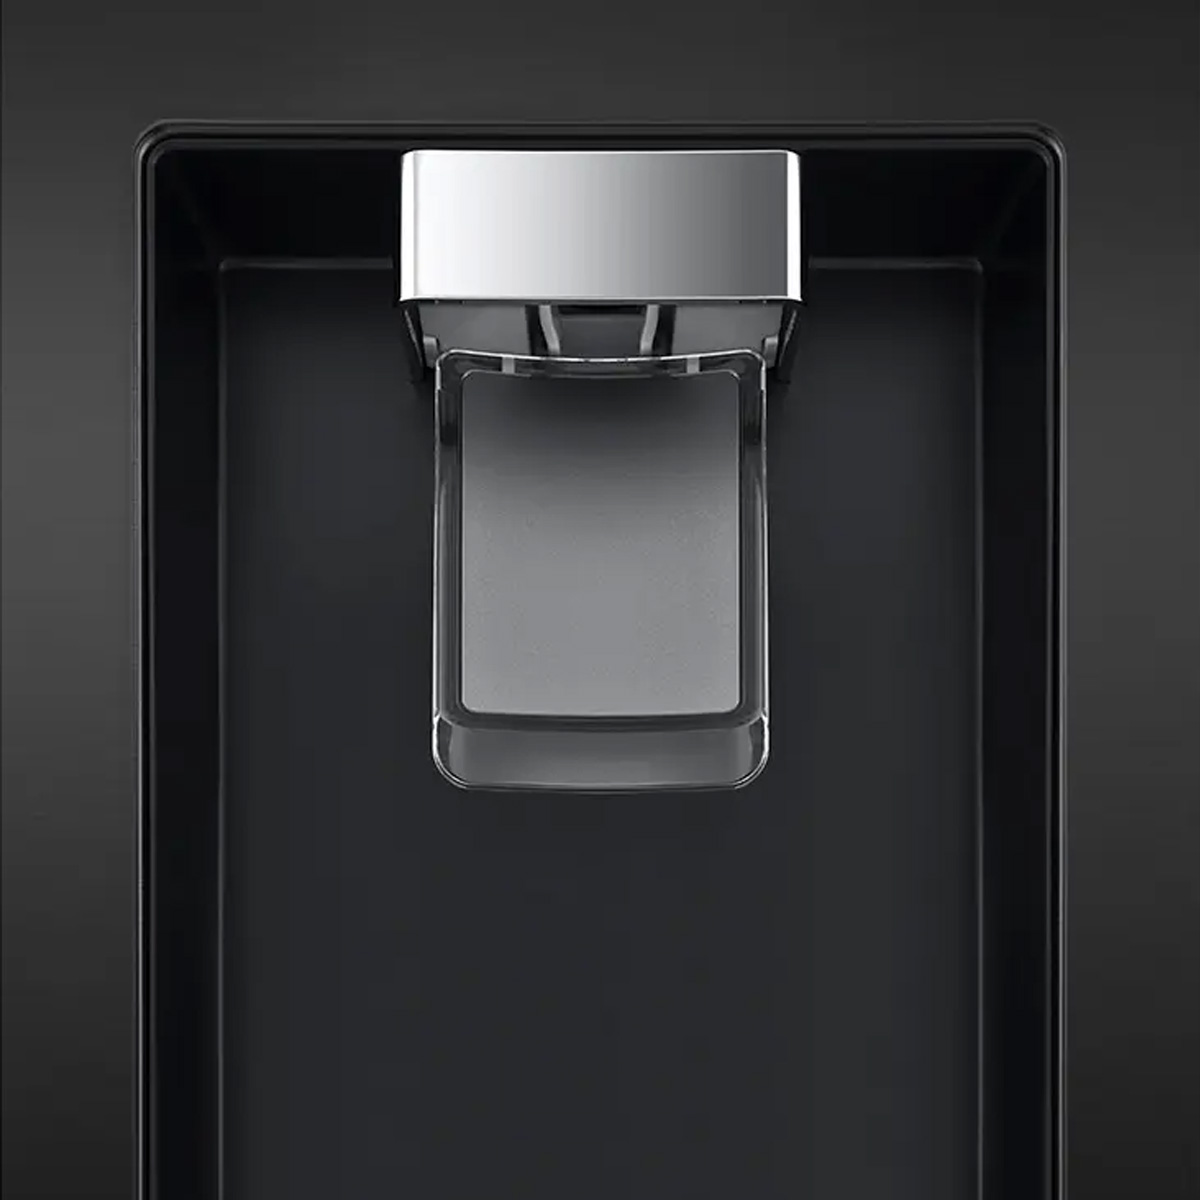 Tủ Lạnh LG GN-D372BLA được trang bị tính năng lấy nước ngoài tiện lợi